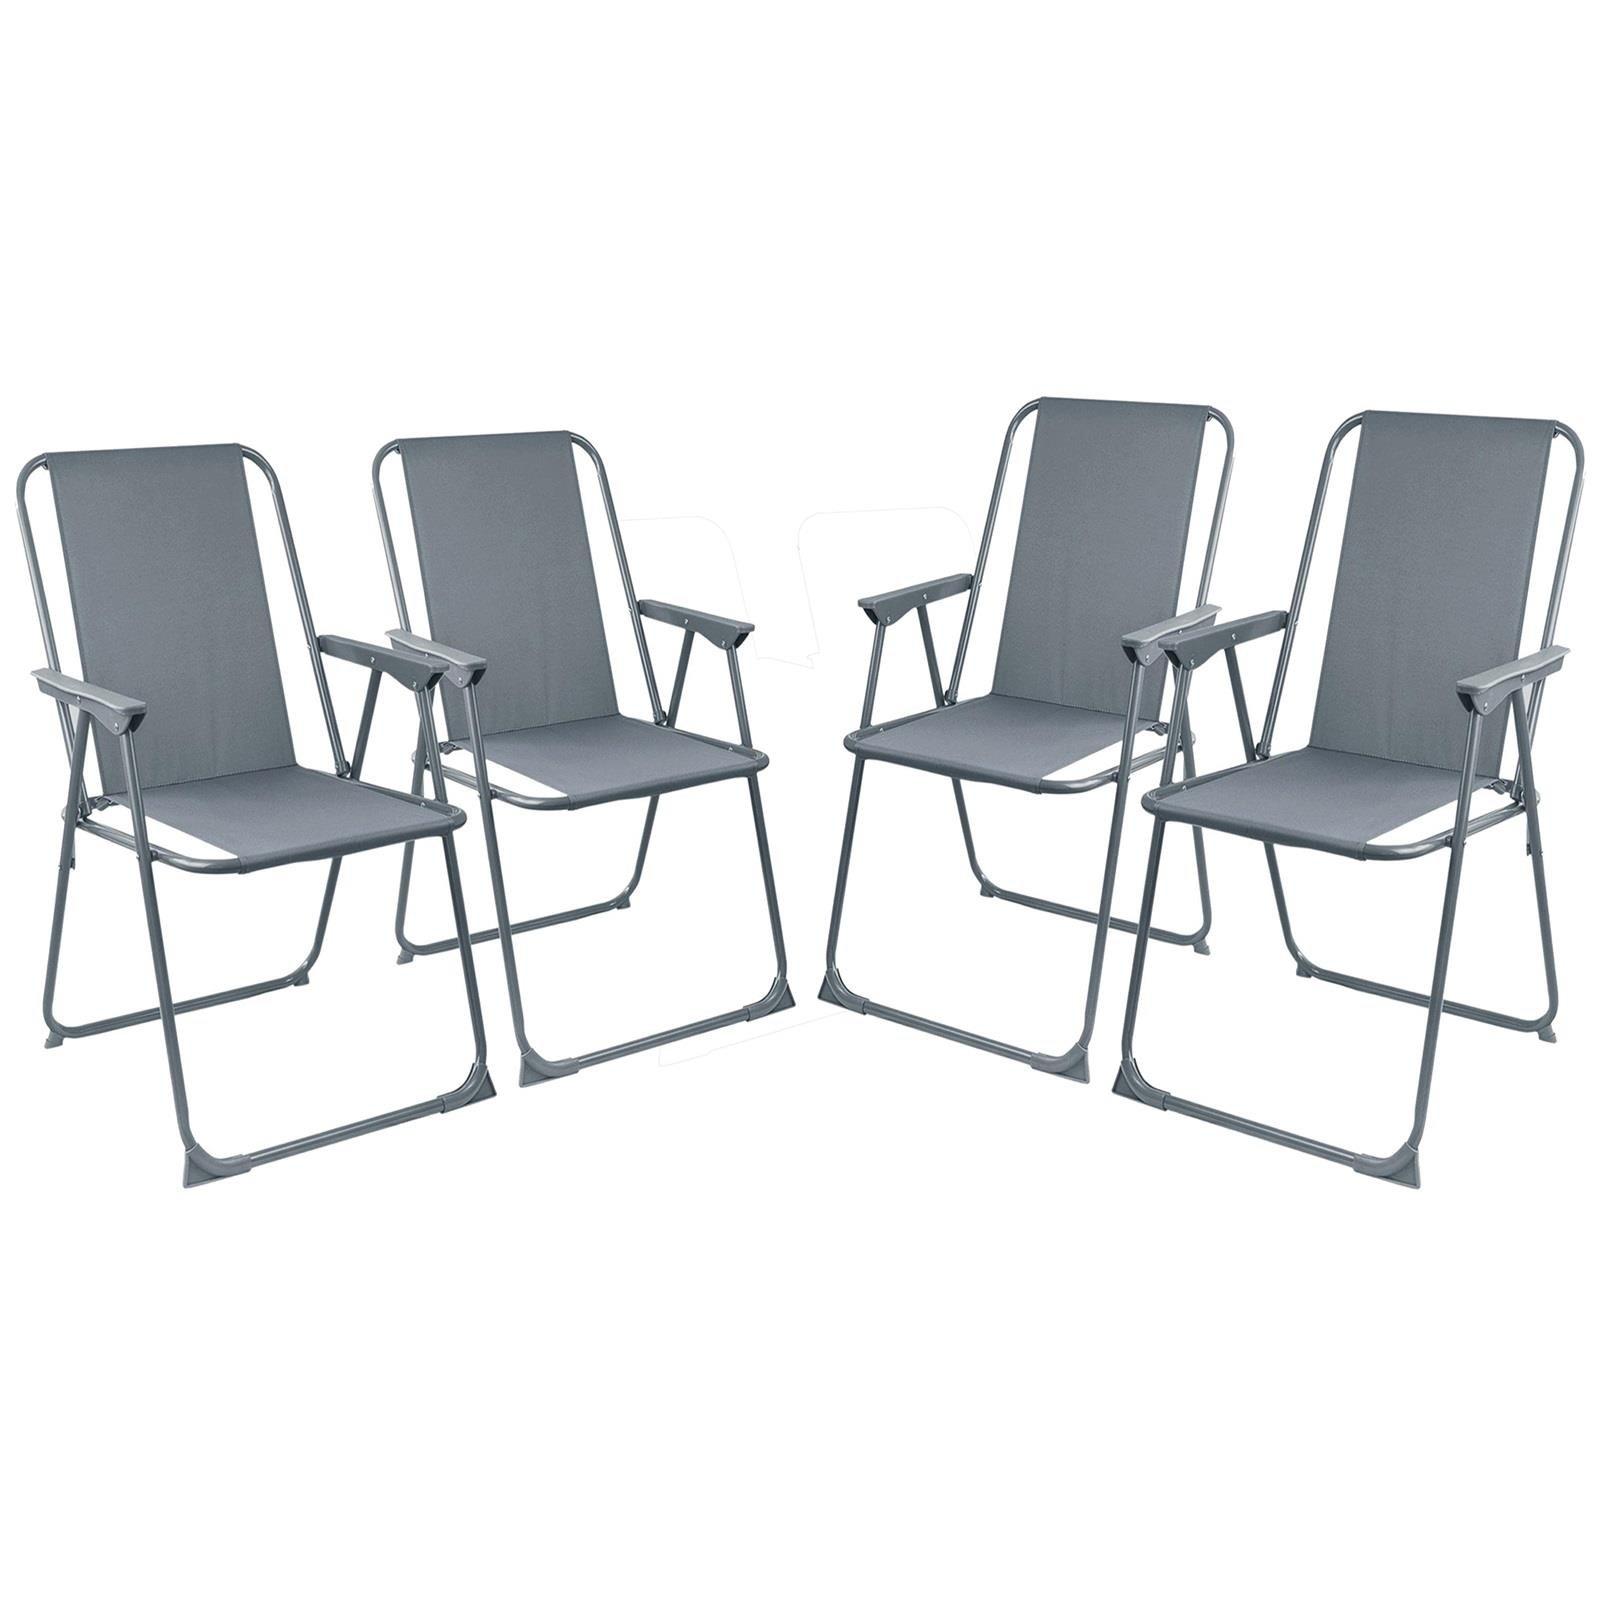 Set Of 4 Folding Garden Chair